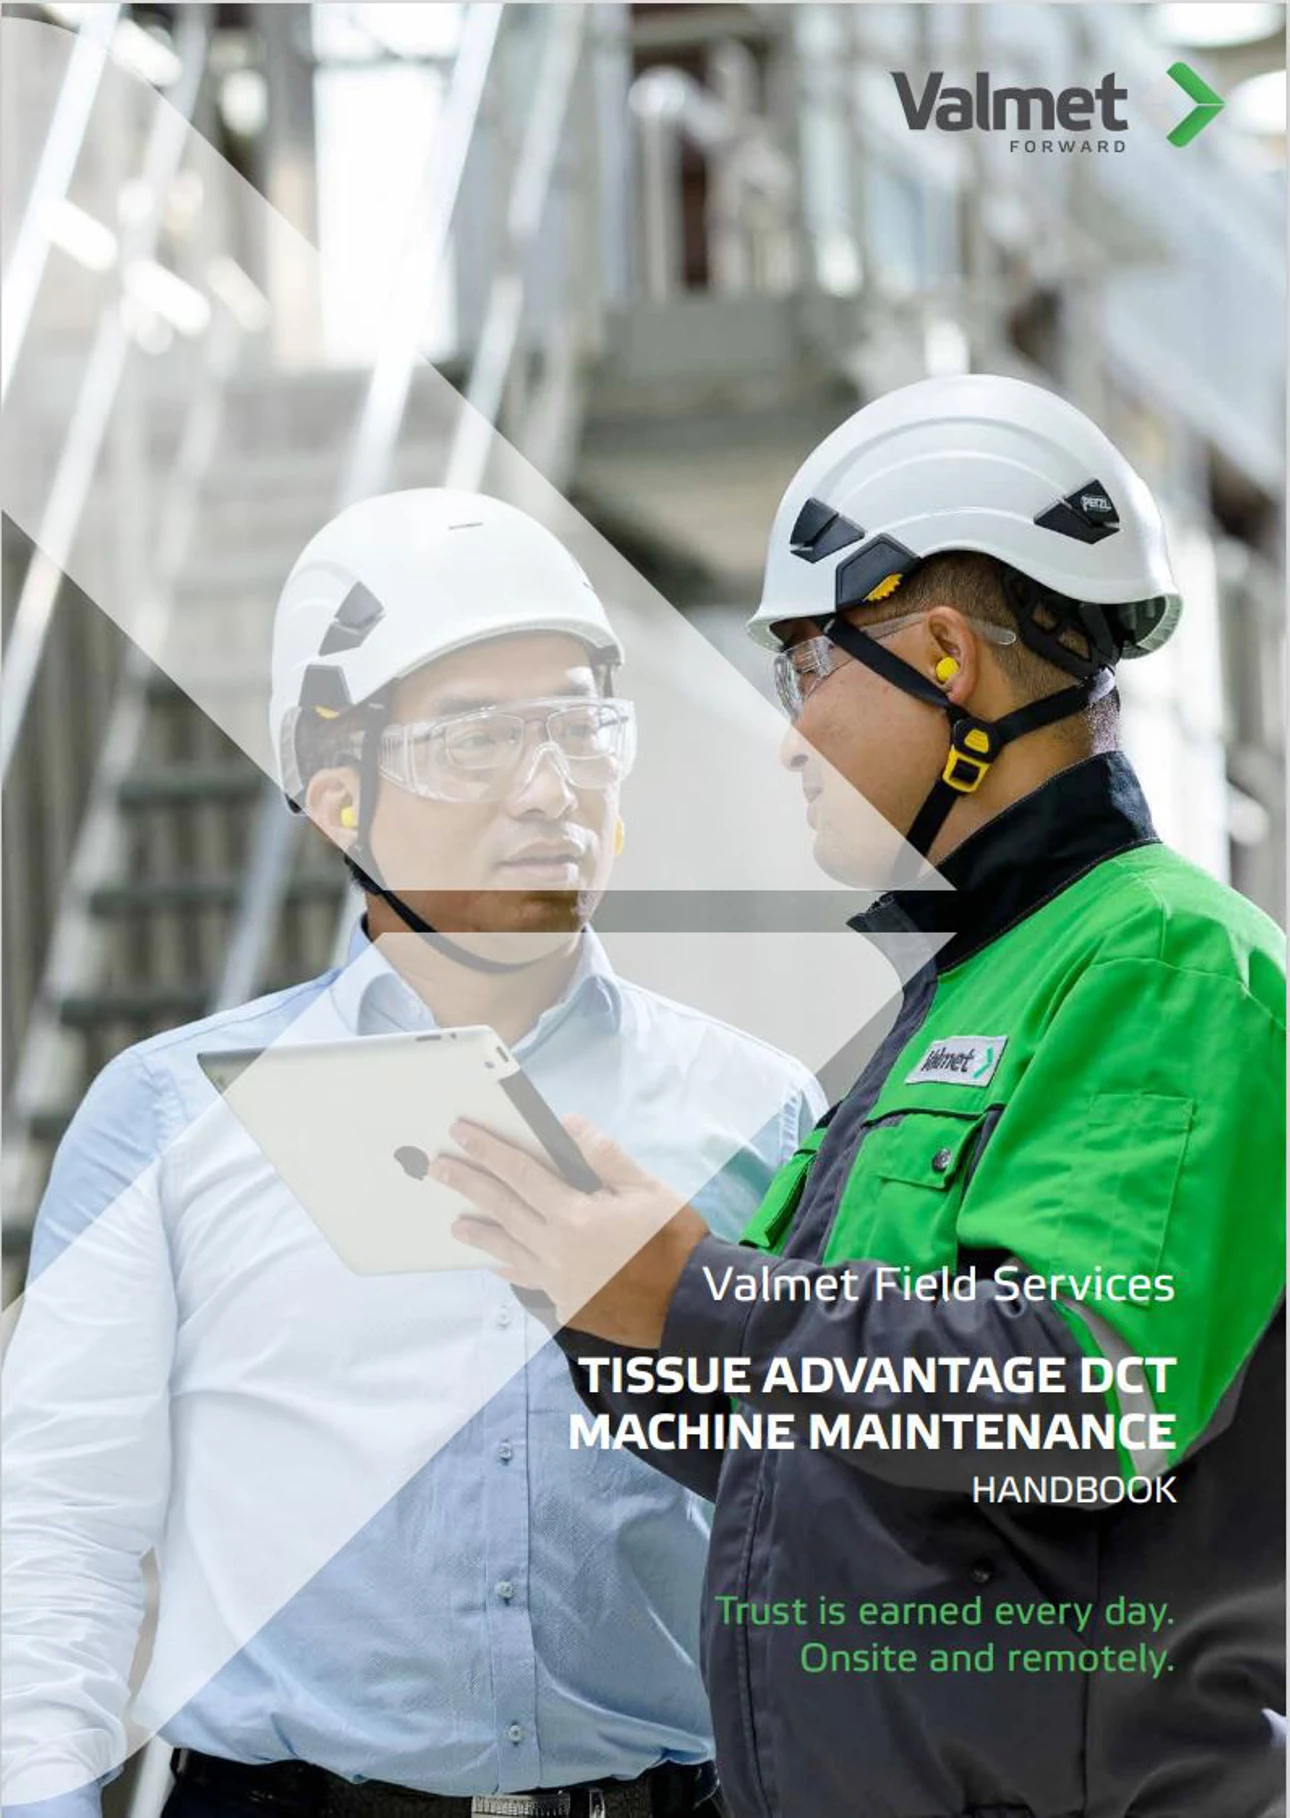 Valmet Field Services Handbook for Tissue Machines